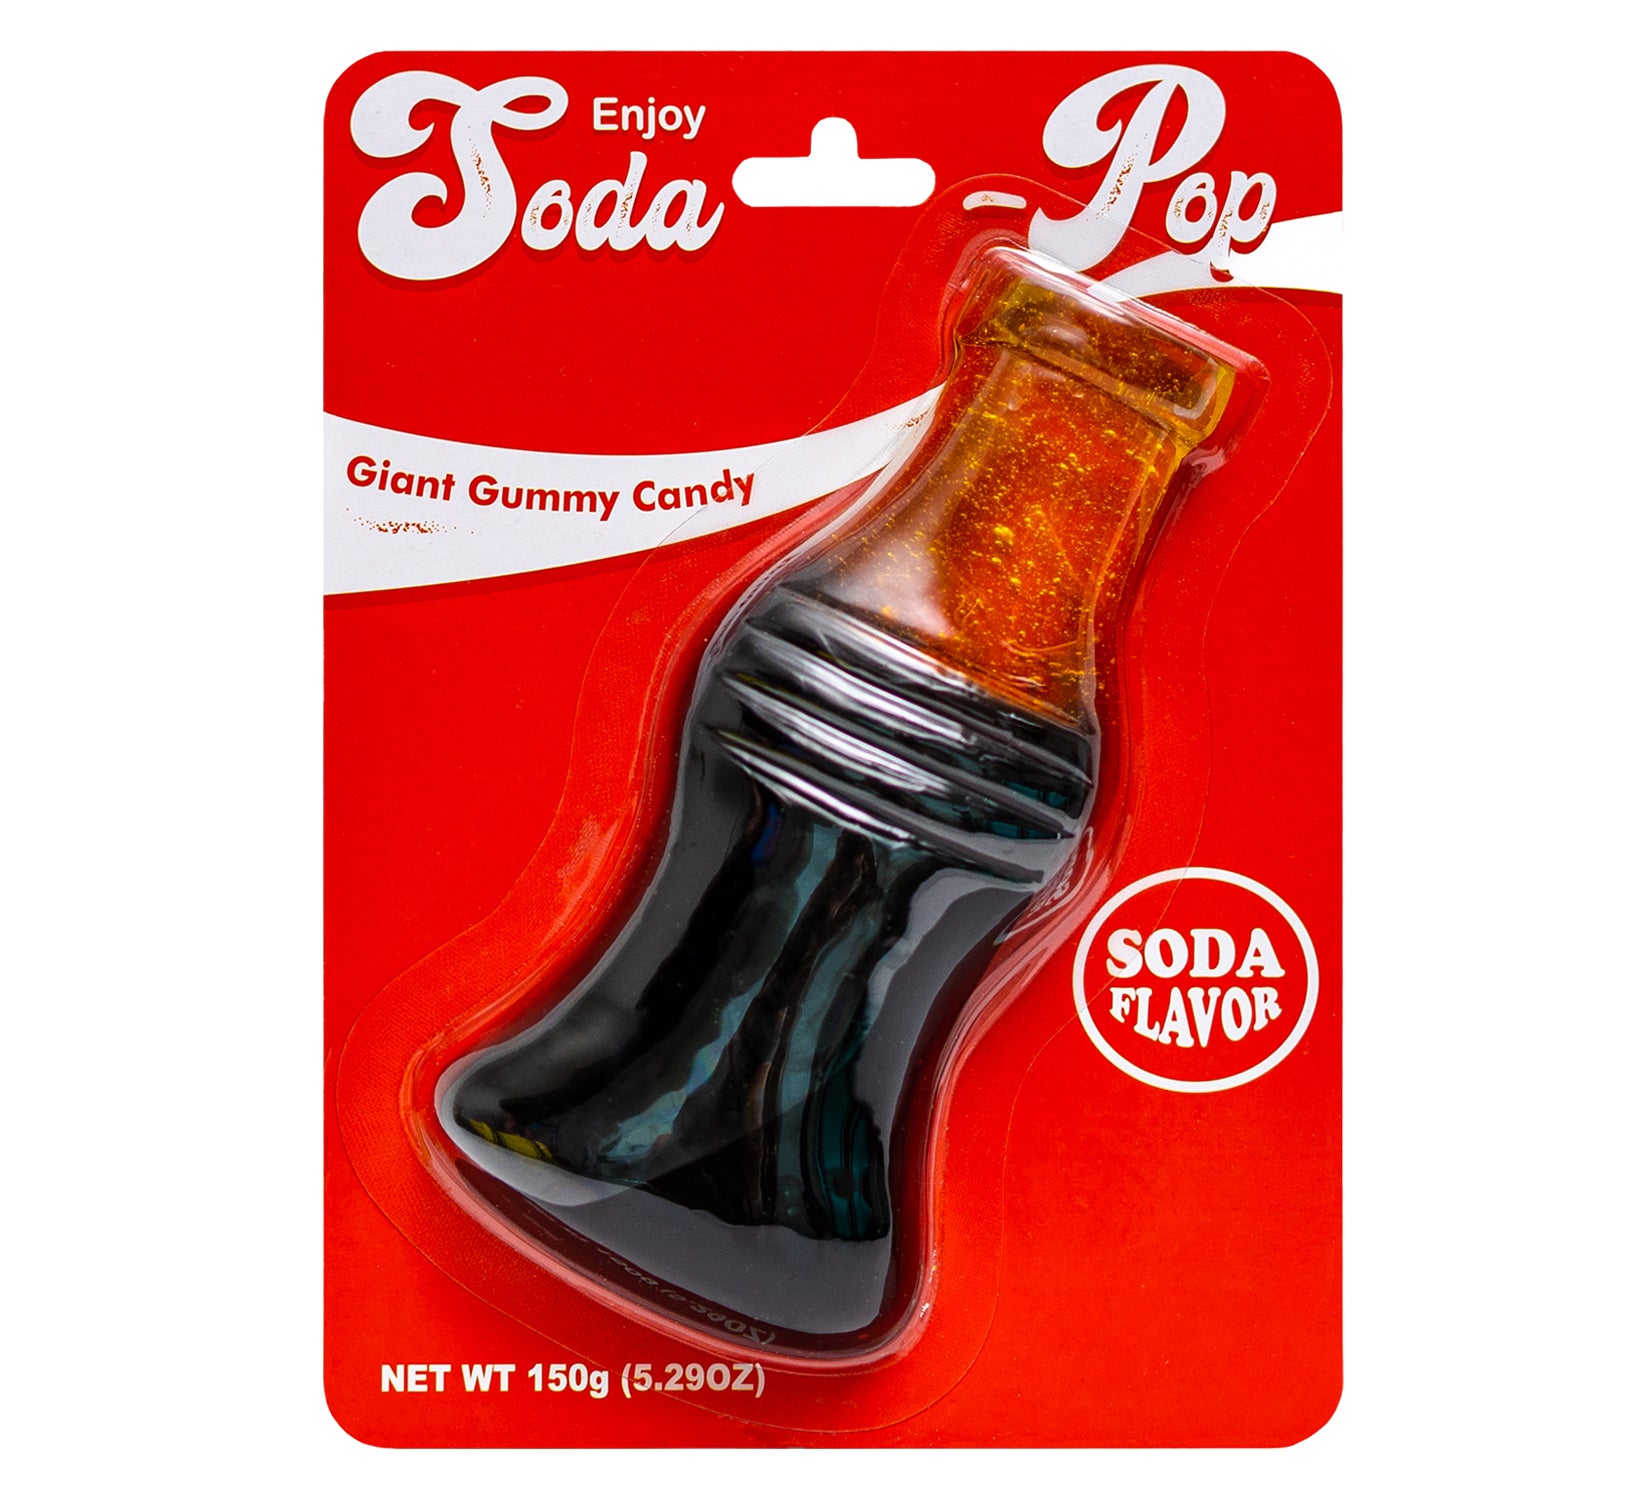 Giant Gummy Soda Pop